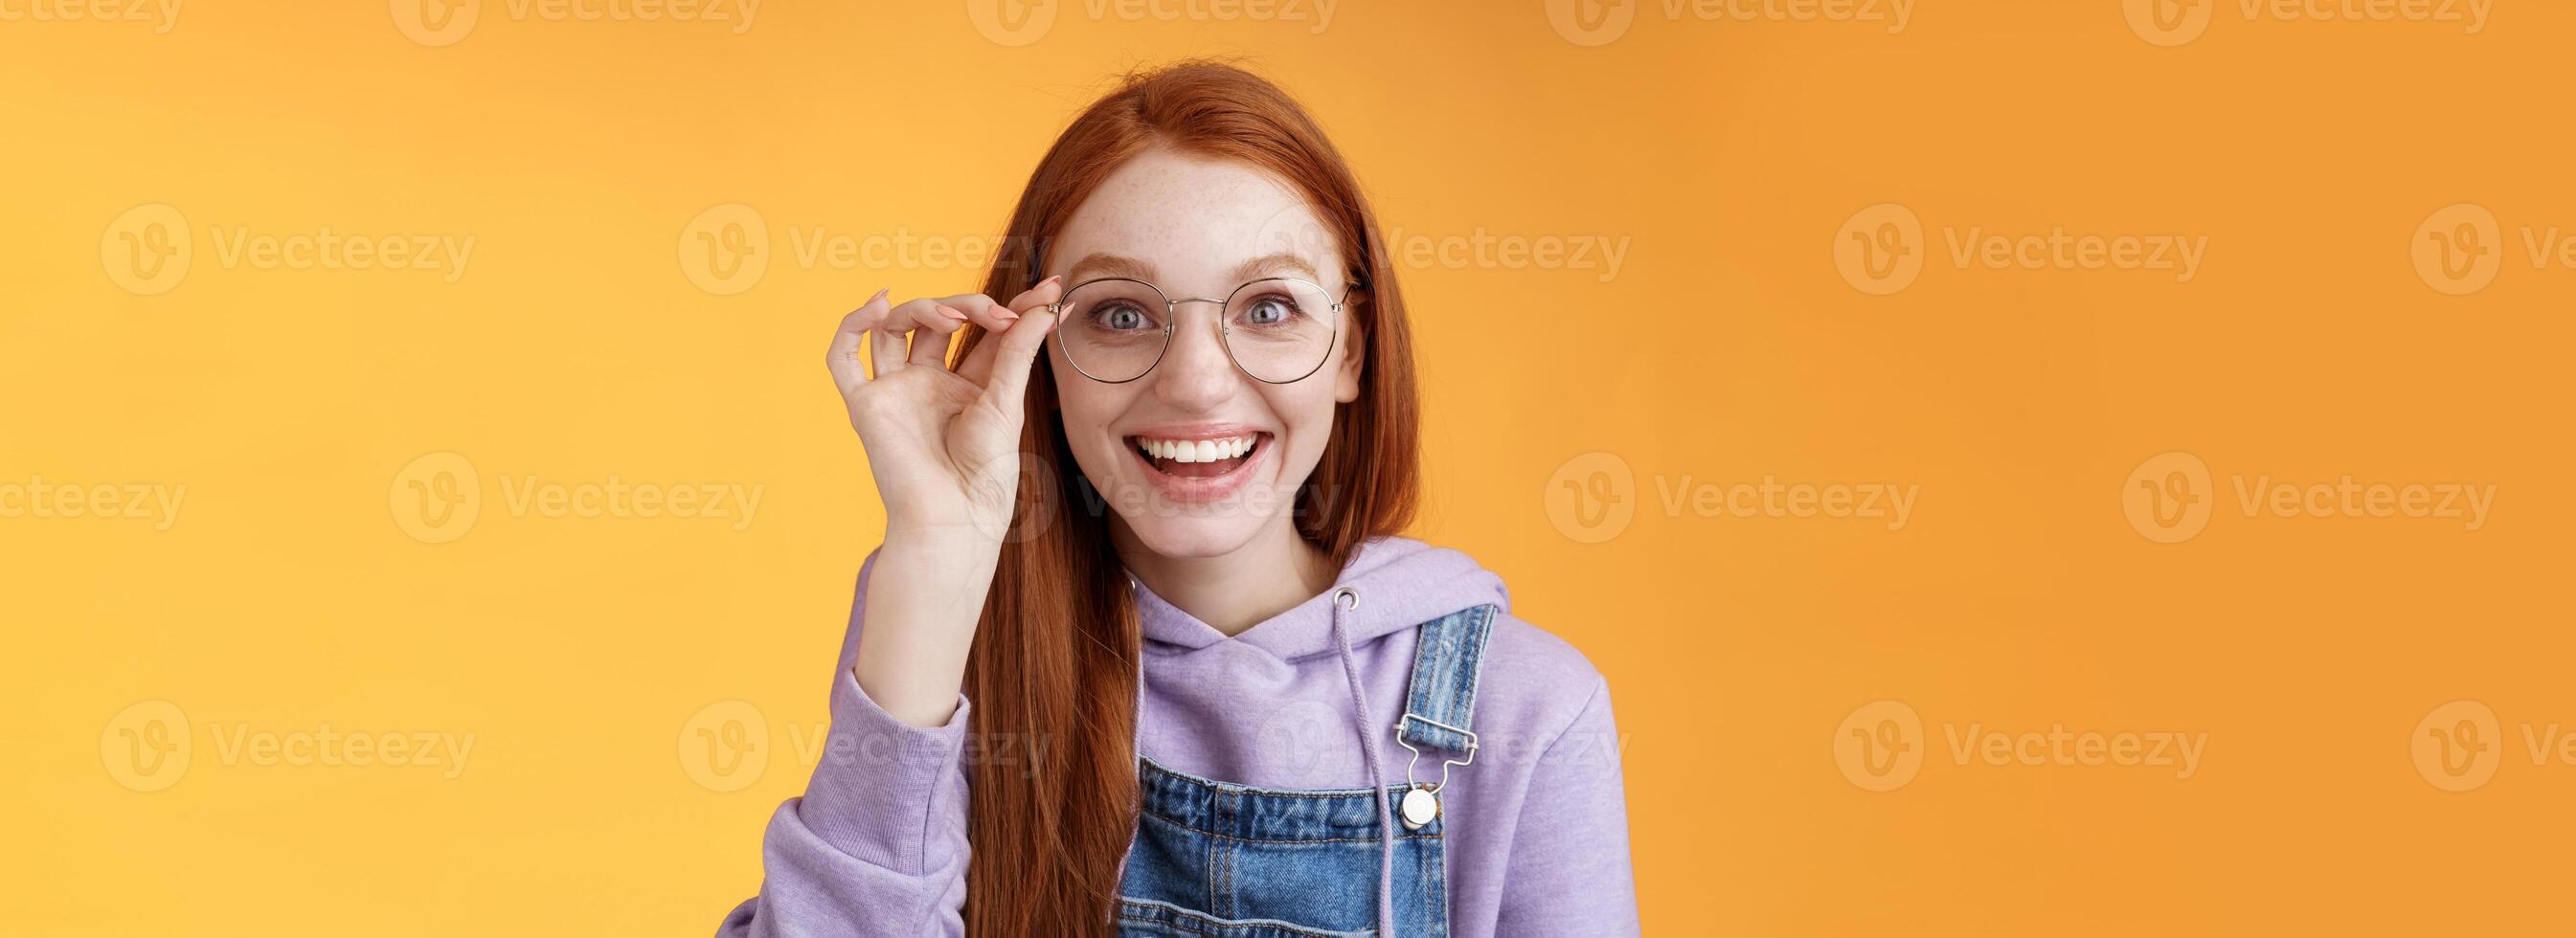 Lycklig entusiastisk ung rödhårig flicka roade hitta ut excellent plats fira födelsedag stående glad upphetsad Rör glasögon leende brett vit tänder flin fröjd överraskad, orange bakgrund foto